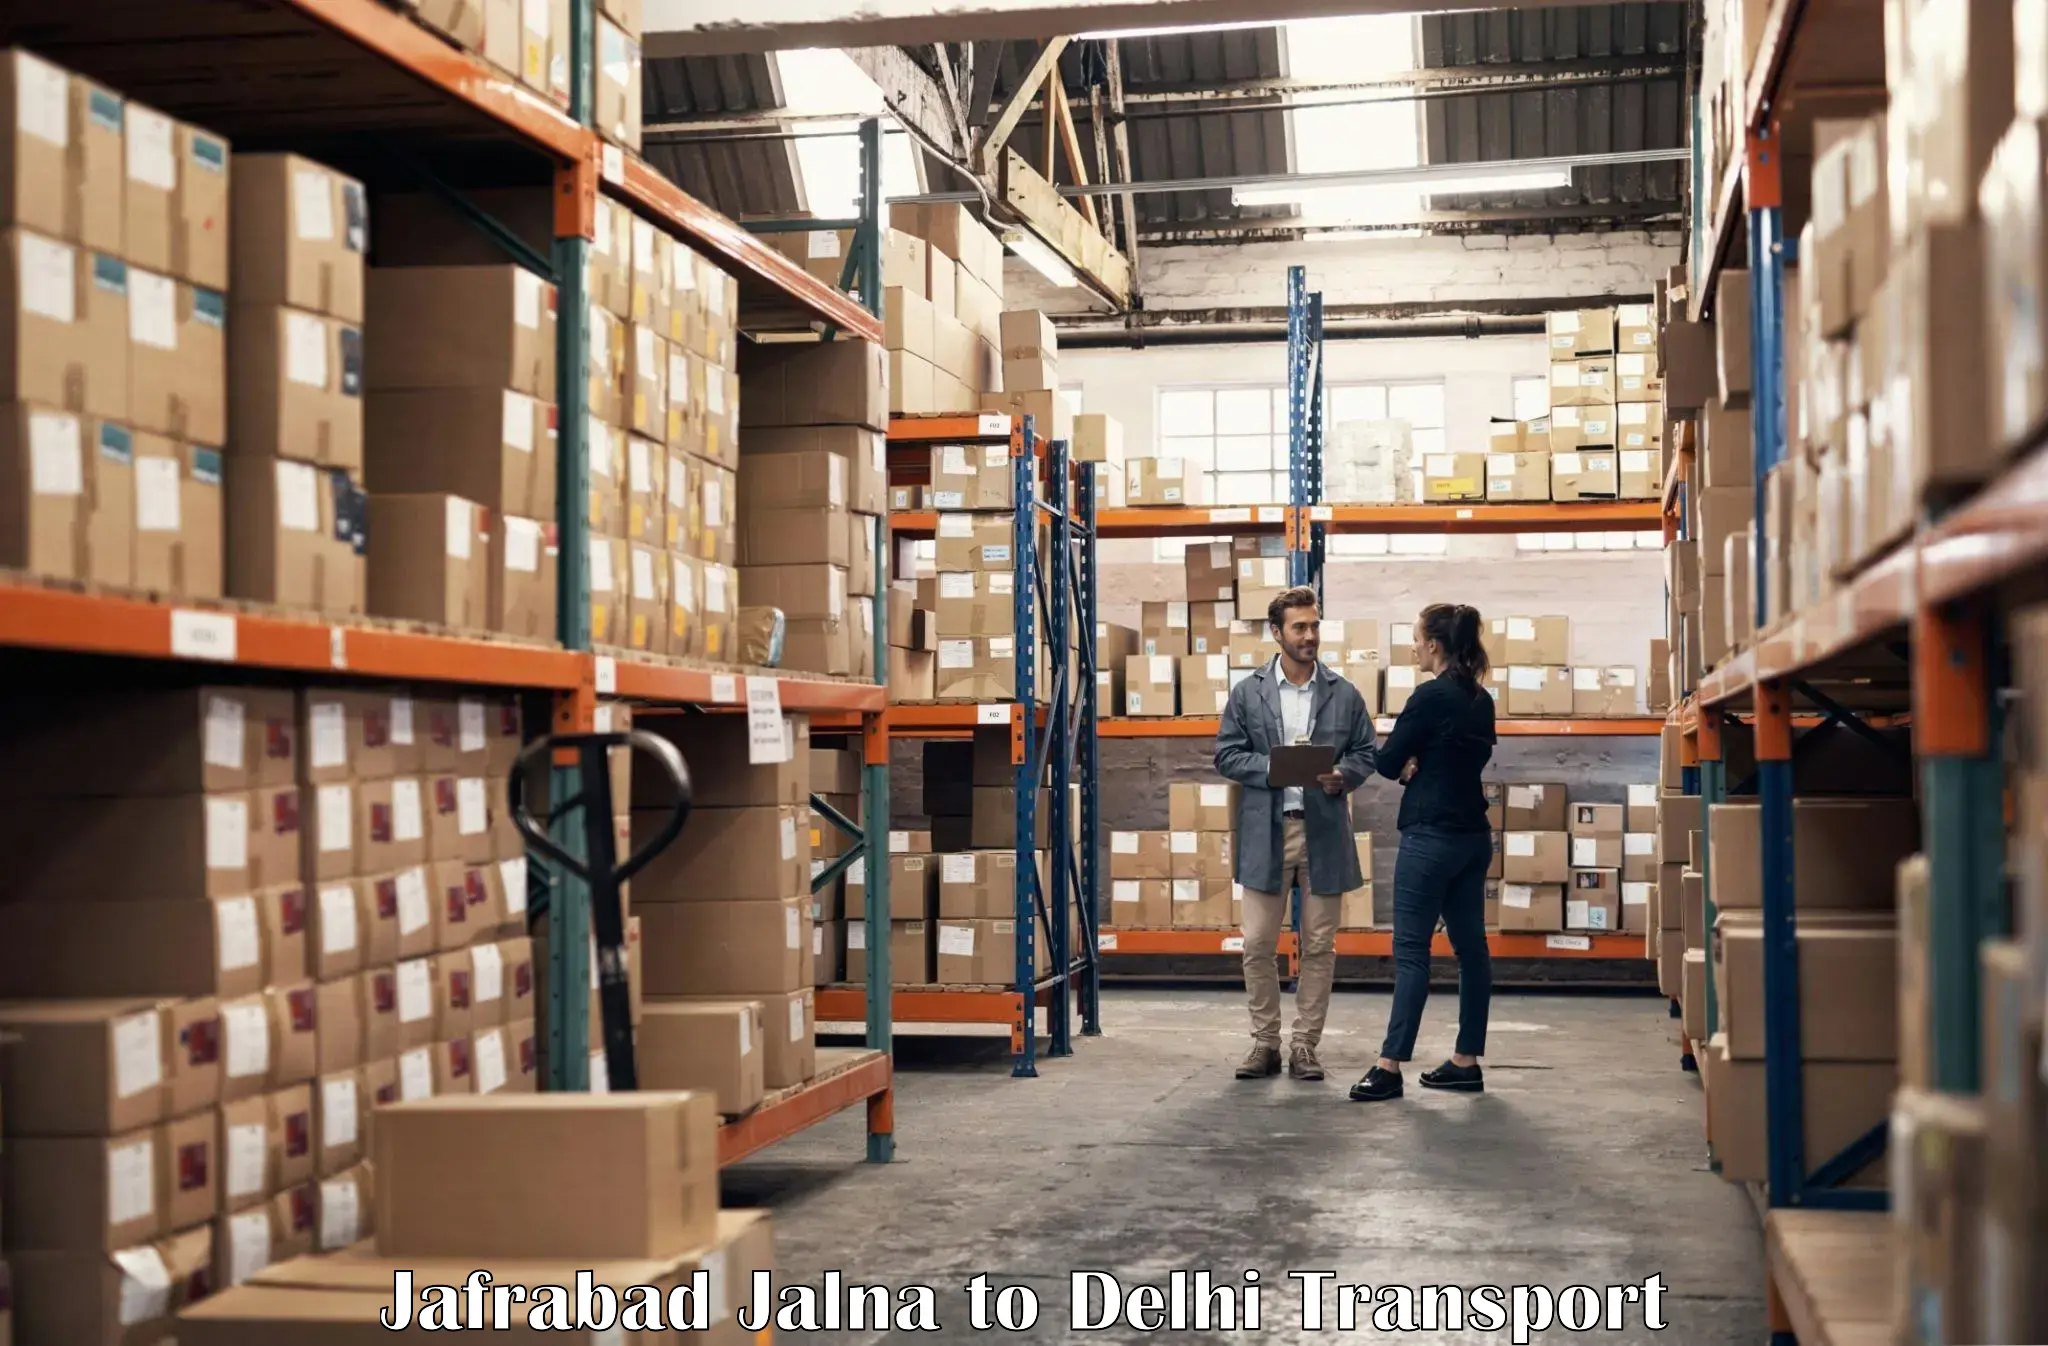 Land transport services Jafrabad Jalna to Delhi